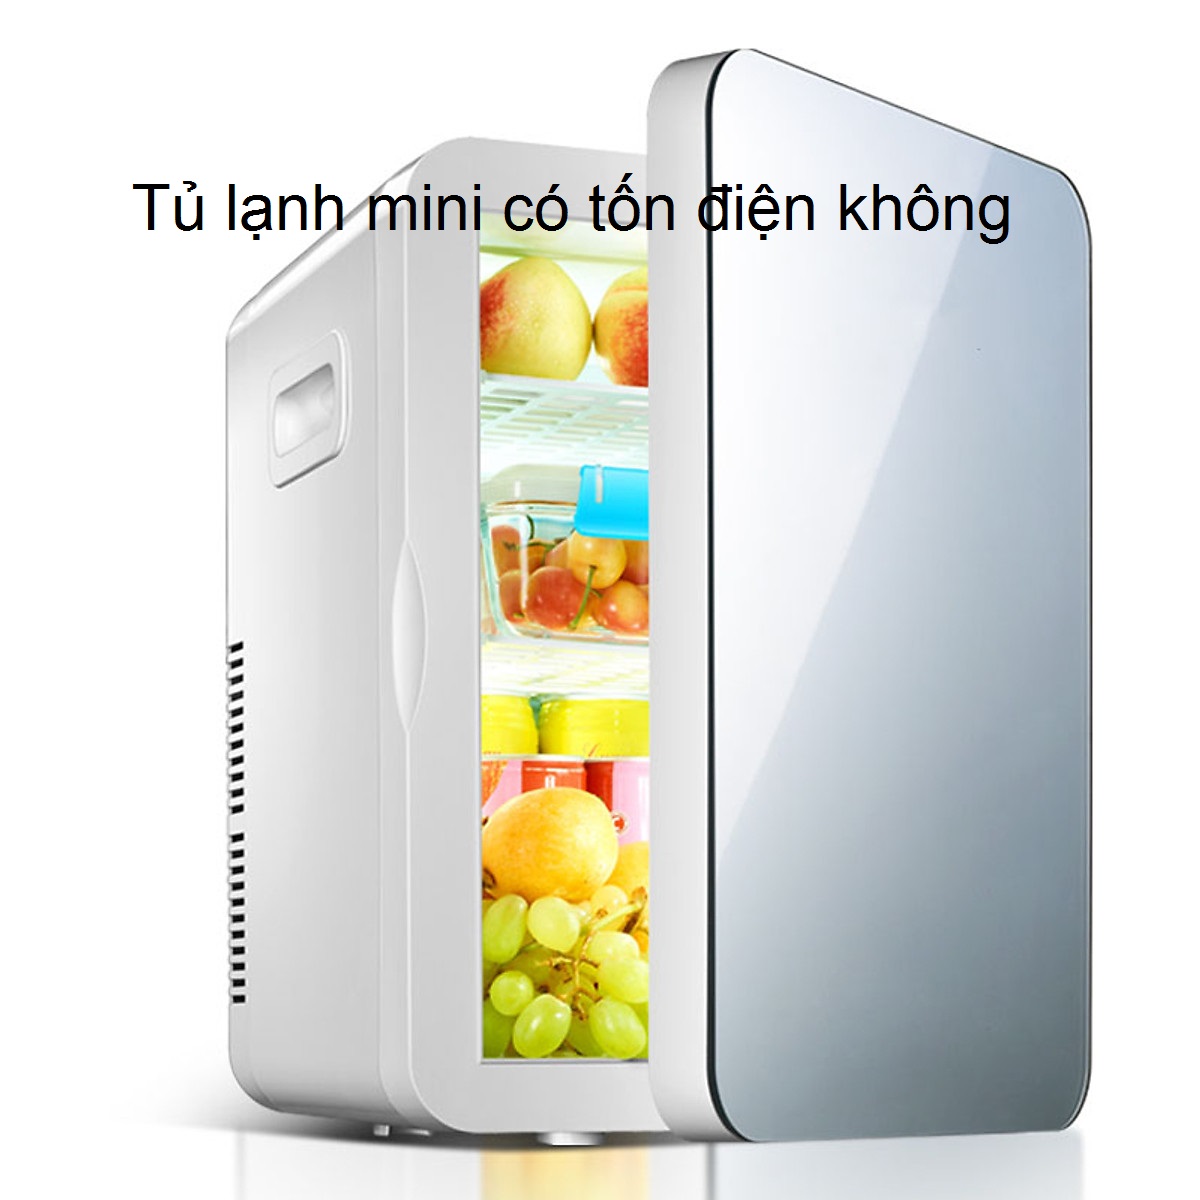 tủ lạnh mini có tốn điện không